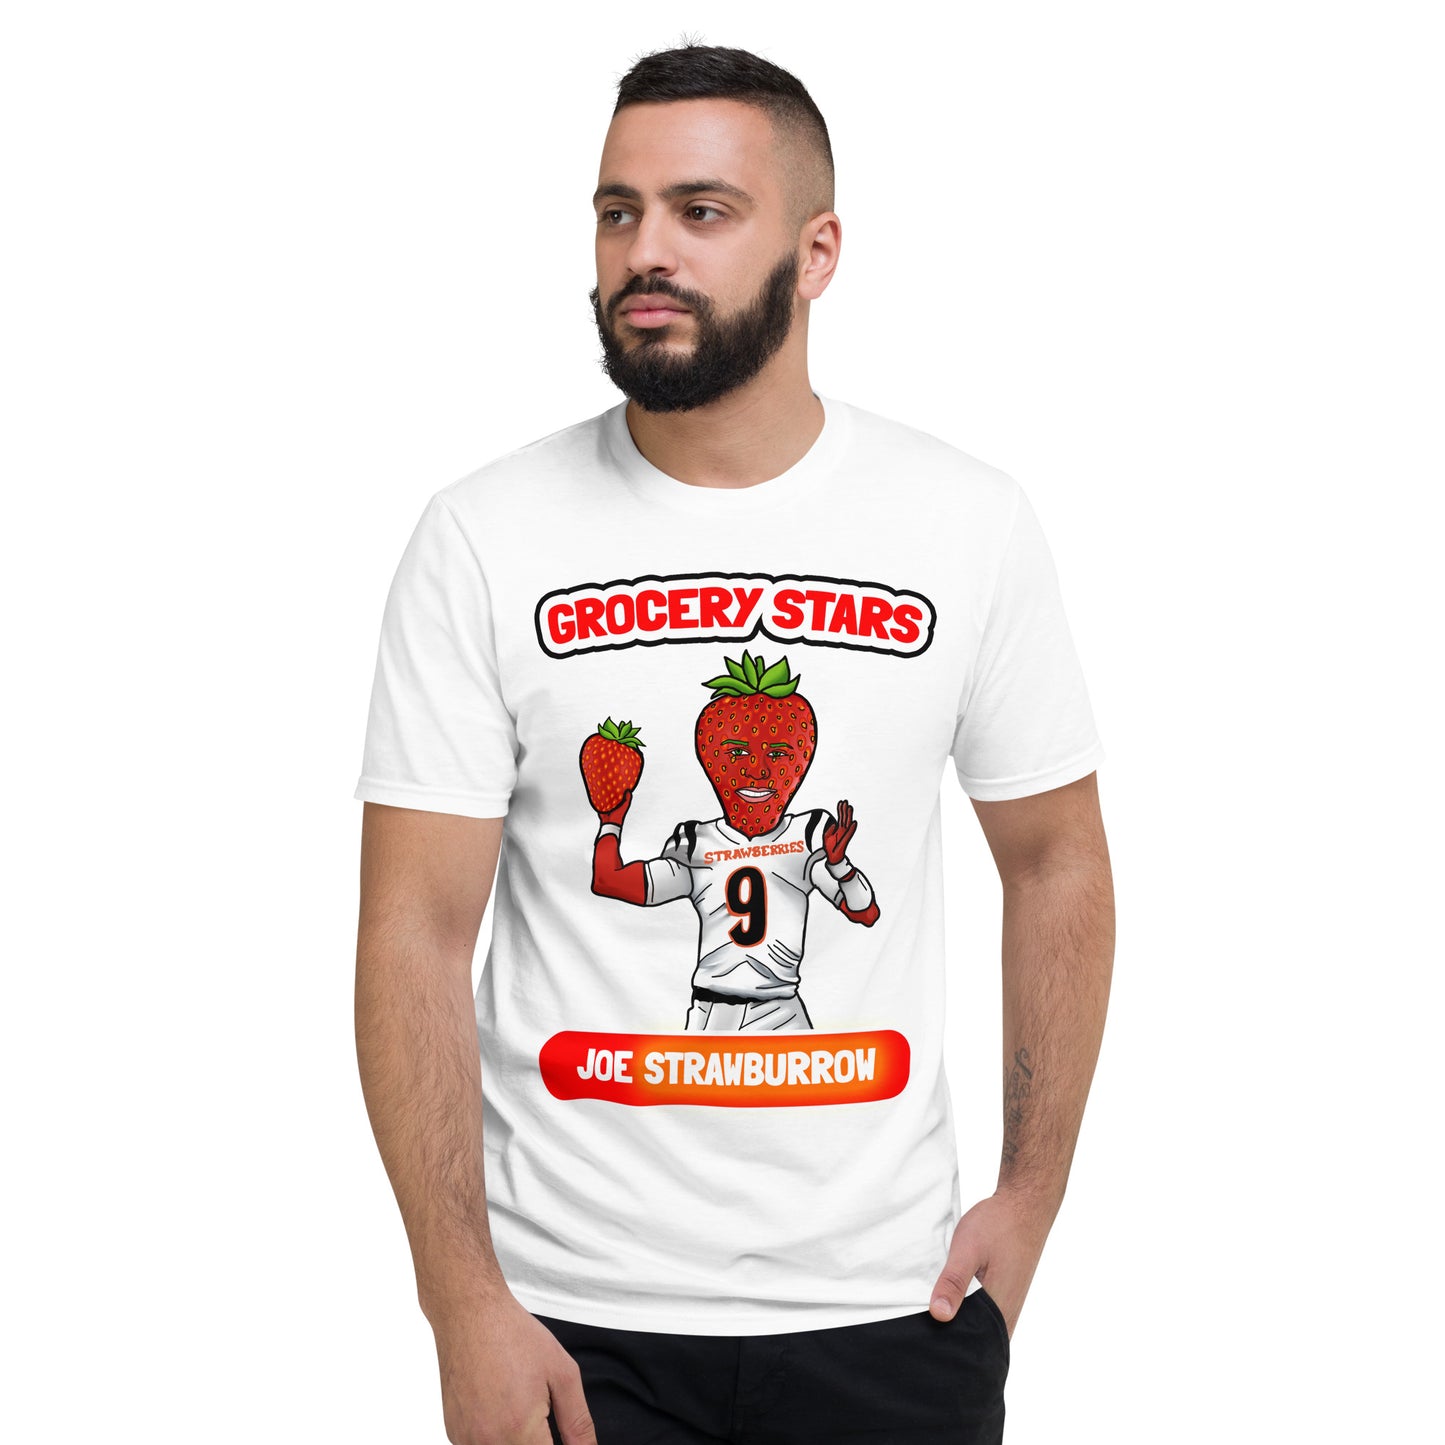 Joe Strawburrow - Adult Short-Sleeve T-Shirt